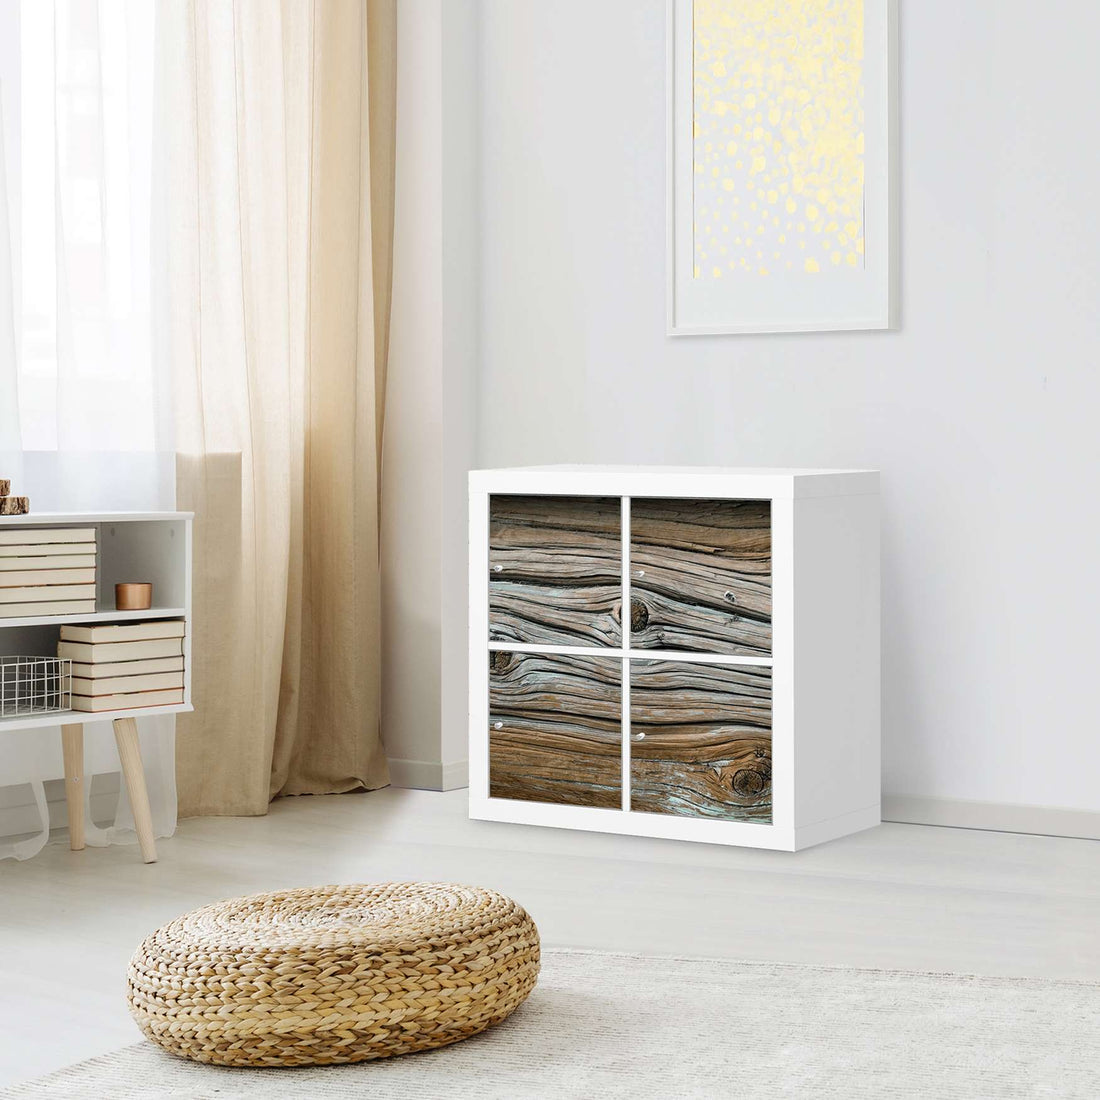 Klebefolie für Möbel Hochbejahrt - IKEA Kallax Regal 4 Türen - Wohnzimmer